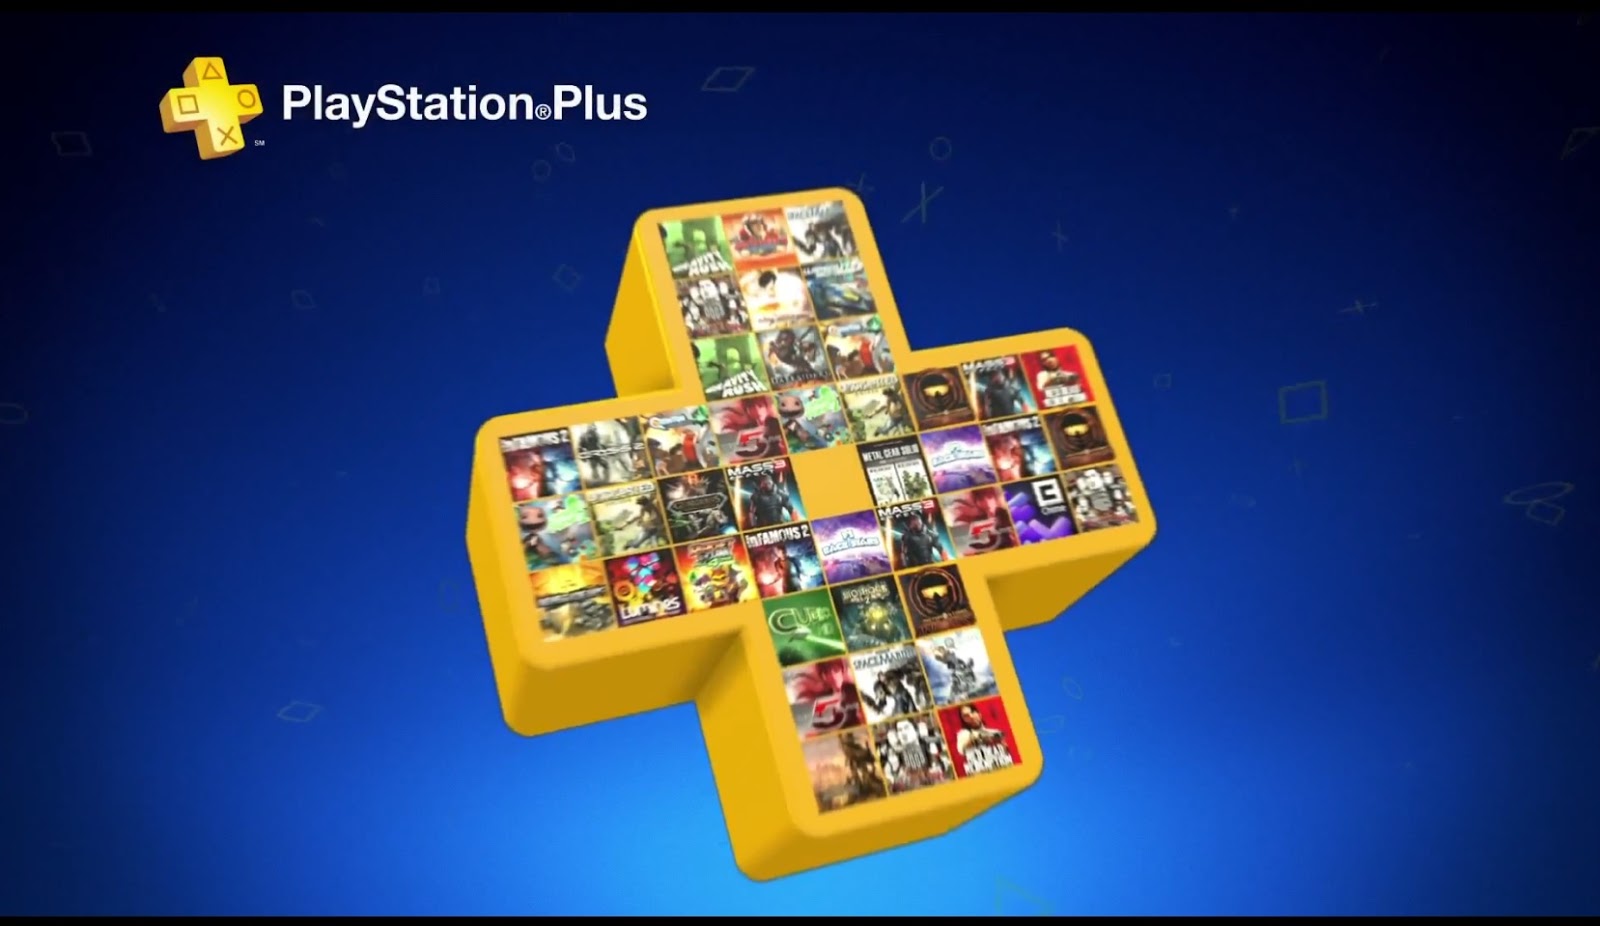 سرویس پلی استیشن پلاس پریمیوم PlayStation Plus Premium
